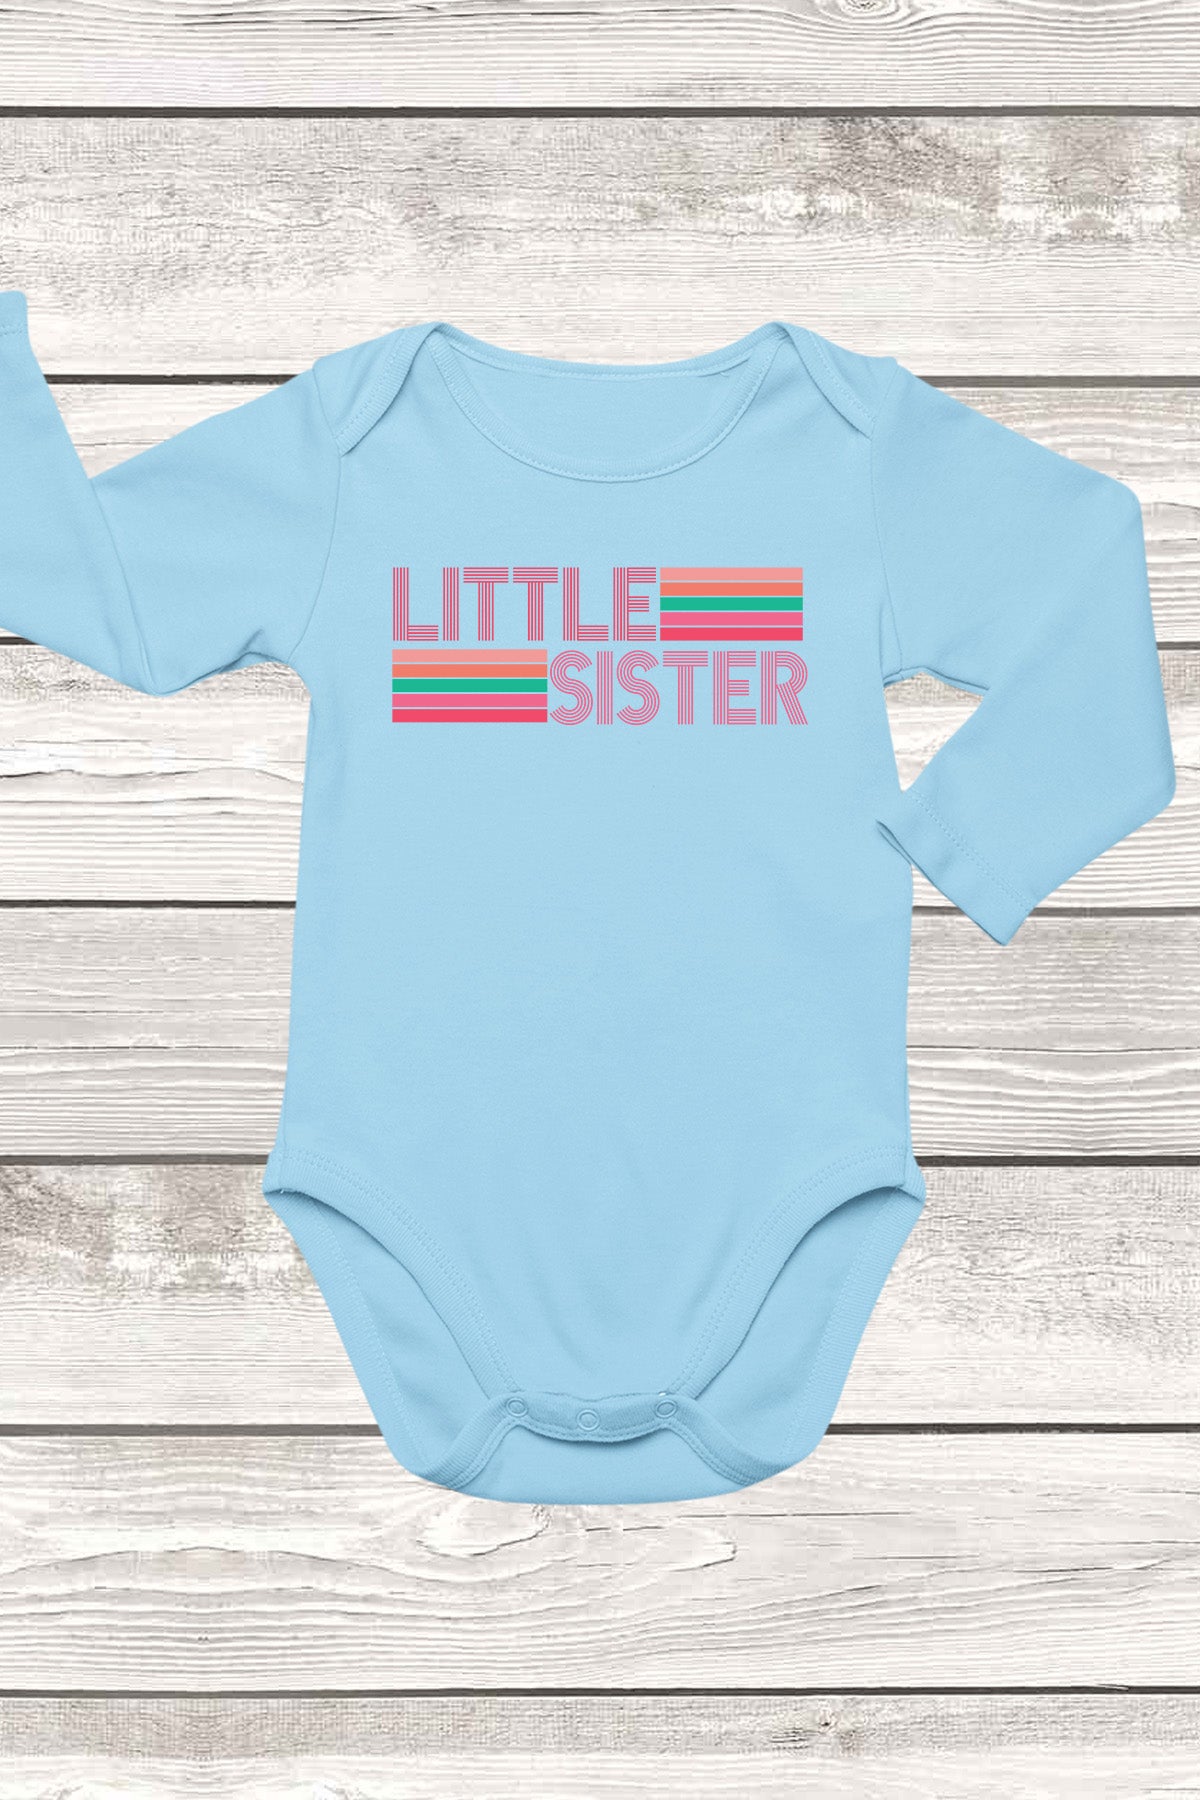 Little Sister Retro Baby Bodysuit